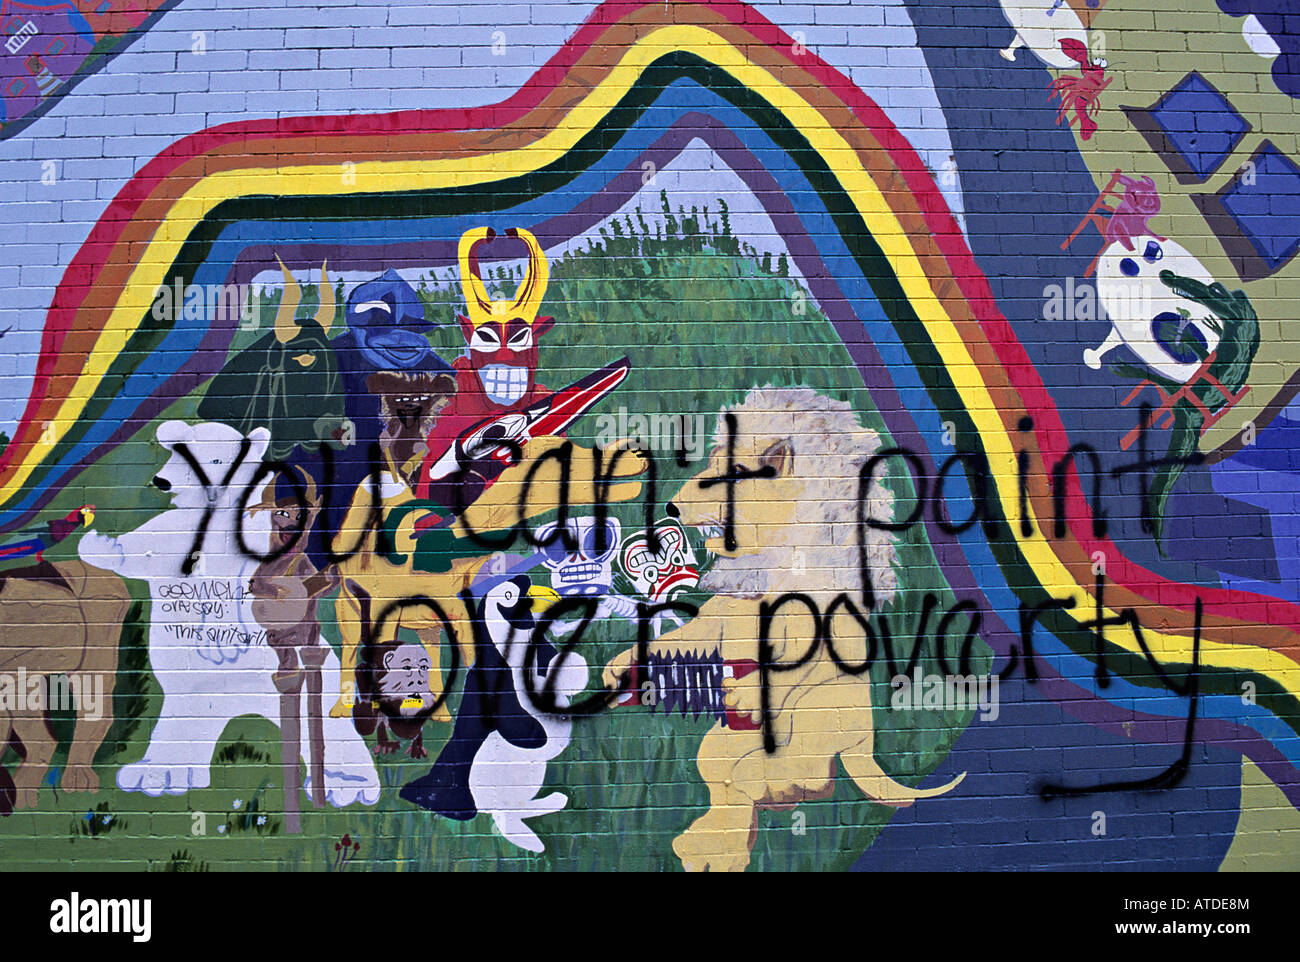 "No puedes pintar encima de la pobreza' pintadas en el mural de la zona de tracción comercial de Vancouver, British Columbia, Canadá Foto de stock